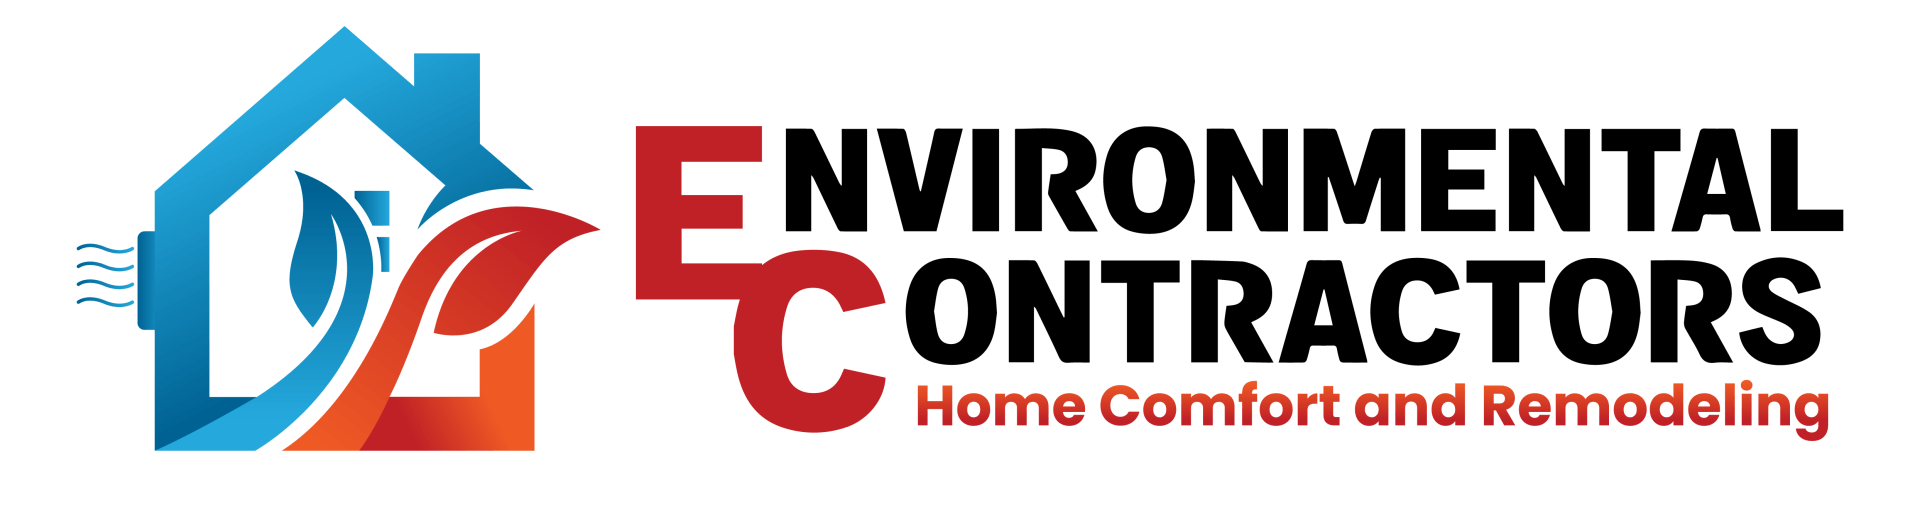 Environmental Contractors